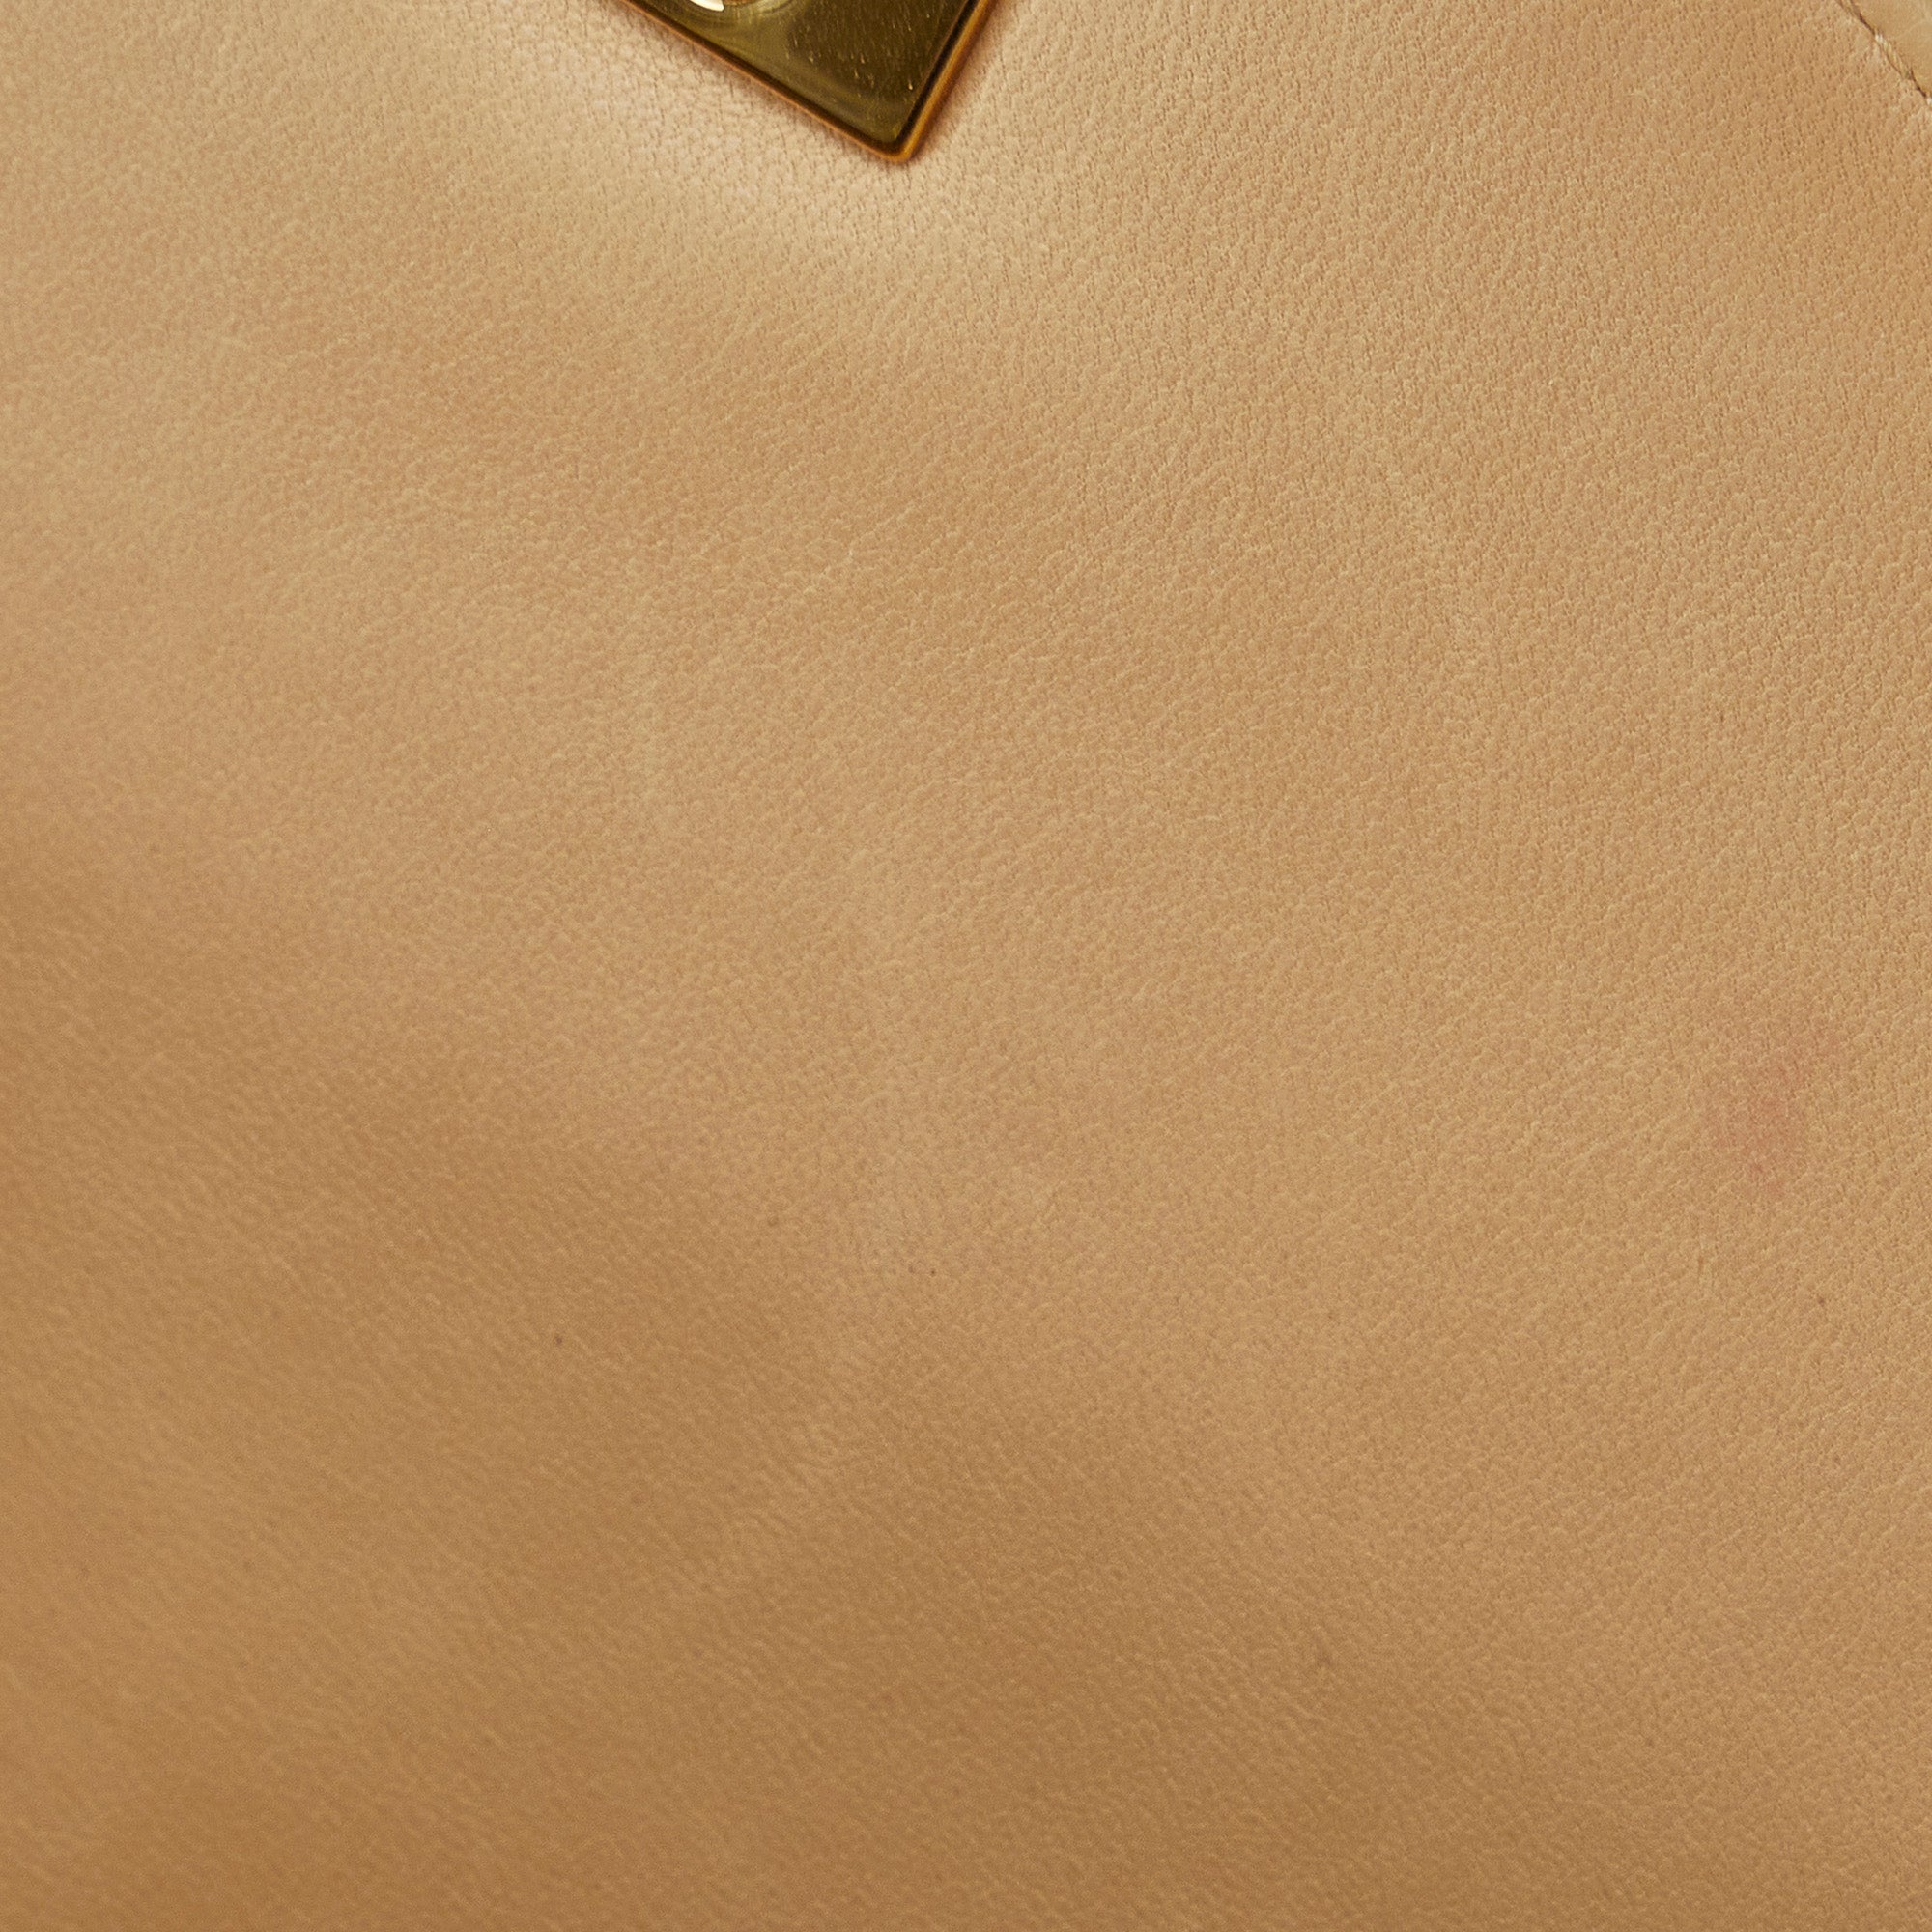 Tan Chanel Medium Lambskin Envelope Flap Handbag - Designer Revival